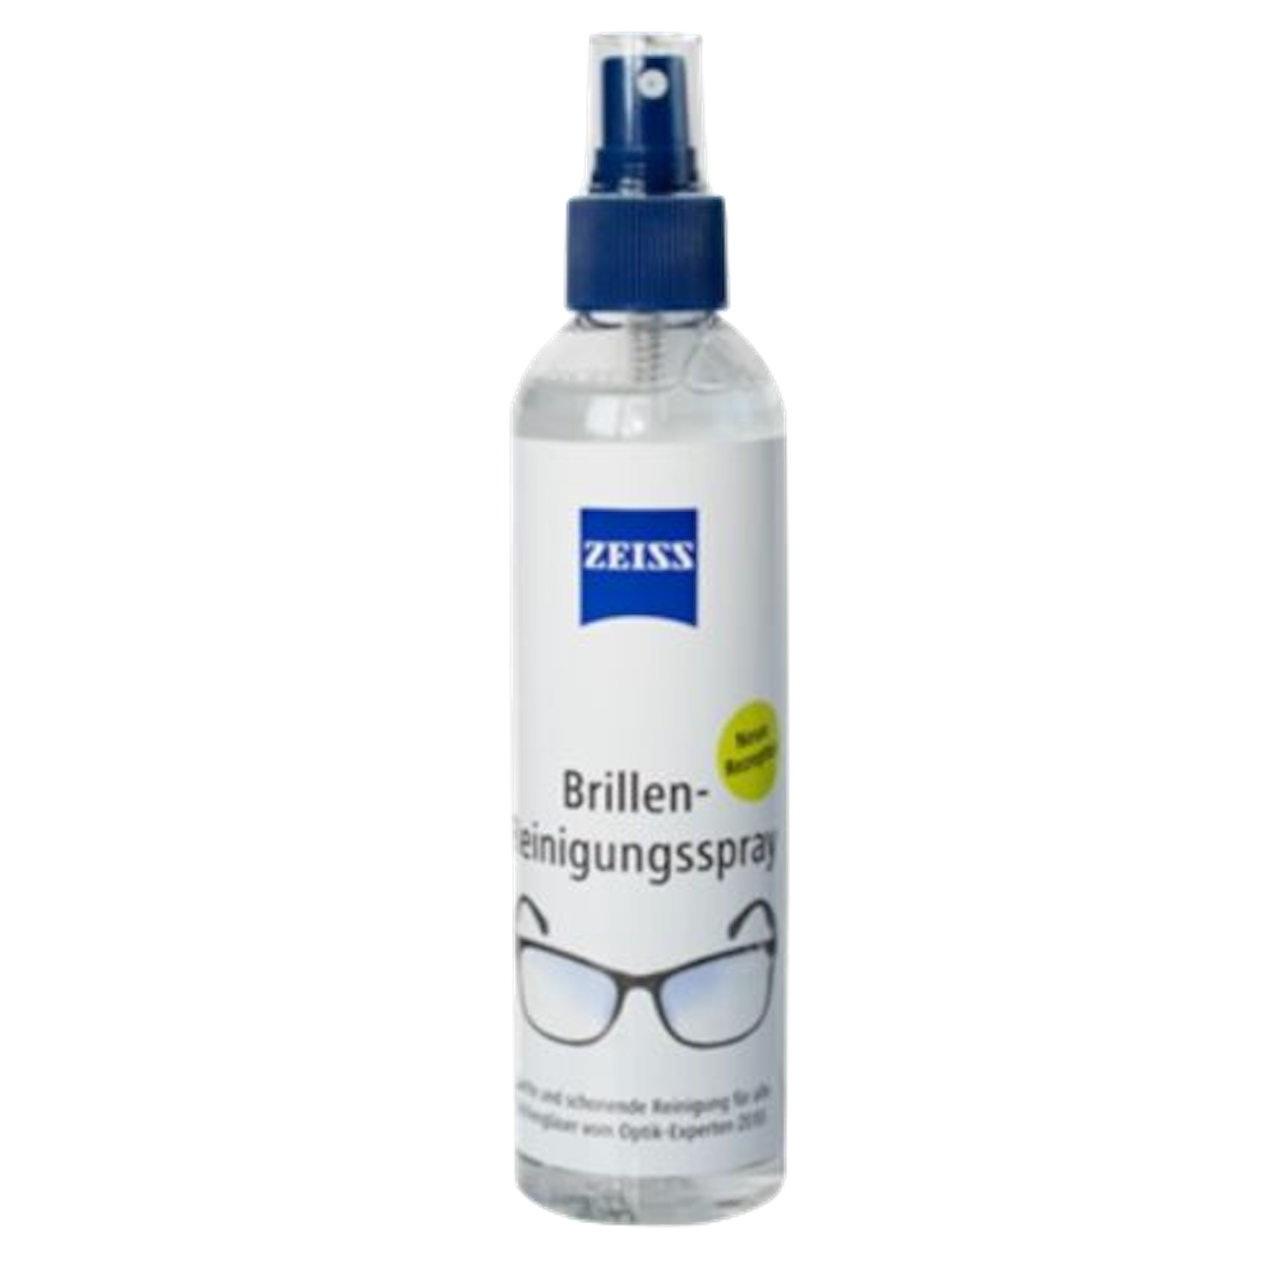 ZEISS Brillen Reinigungsspray (240ml) - schonende Reinigung - Brillenputzspray